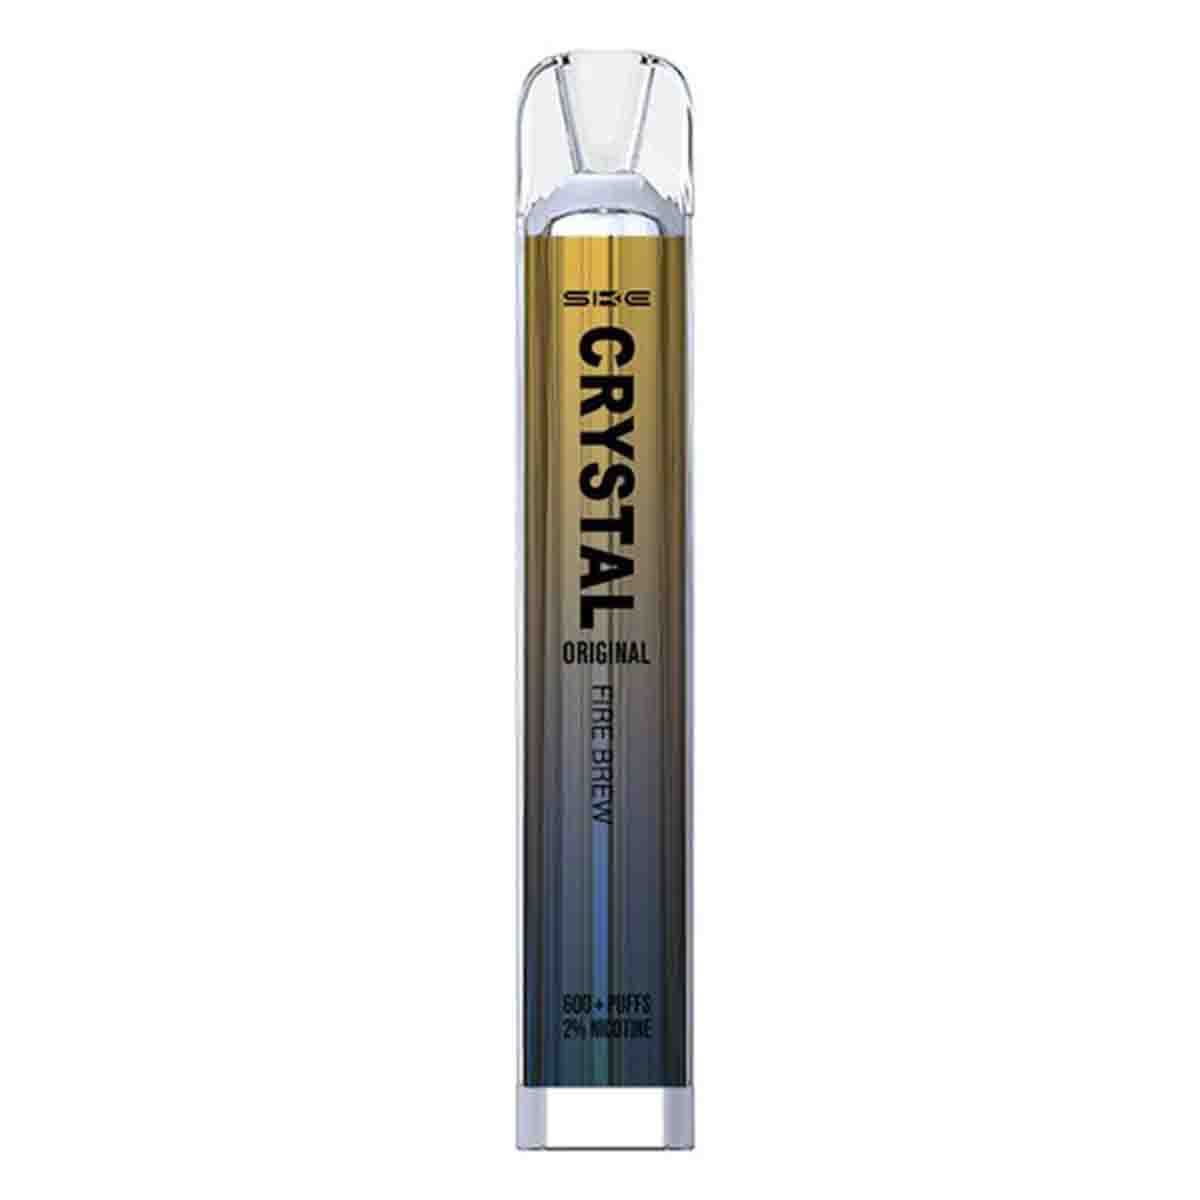 SKE Crystal Bar 600 Disposable Vape